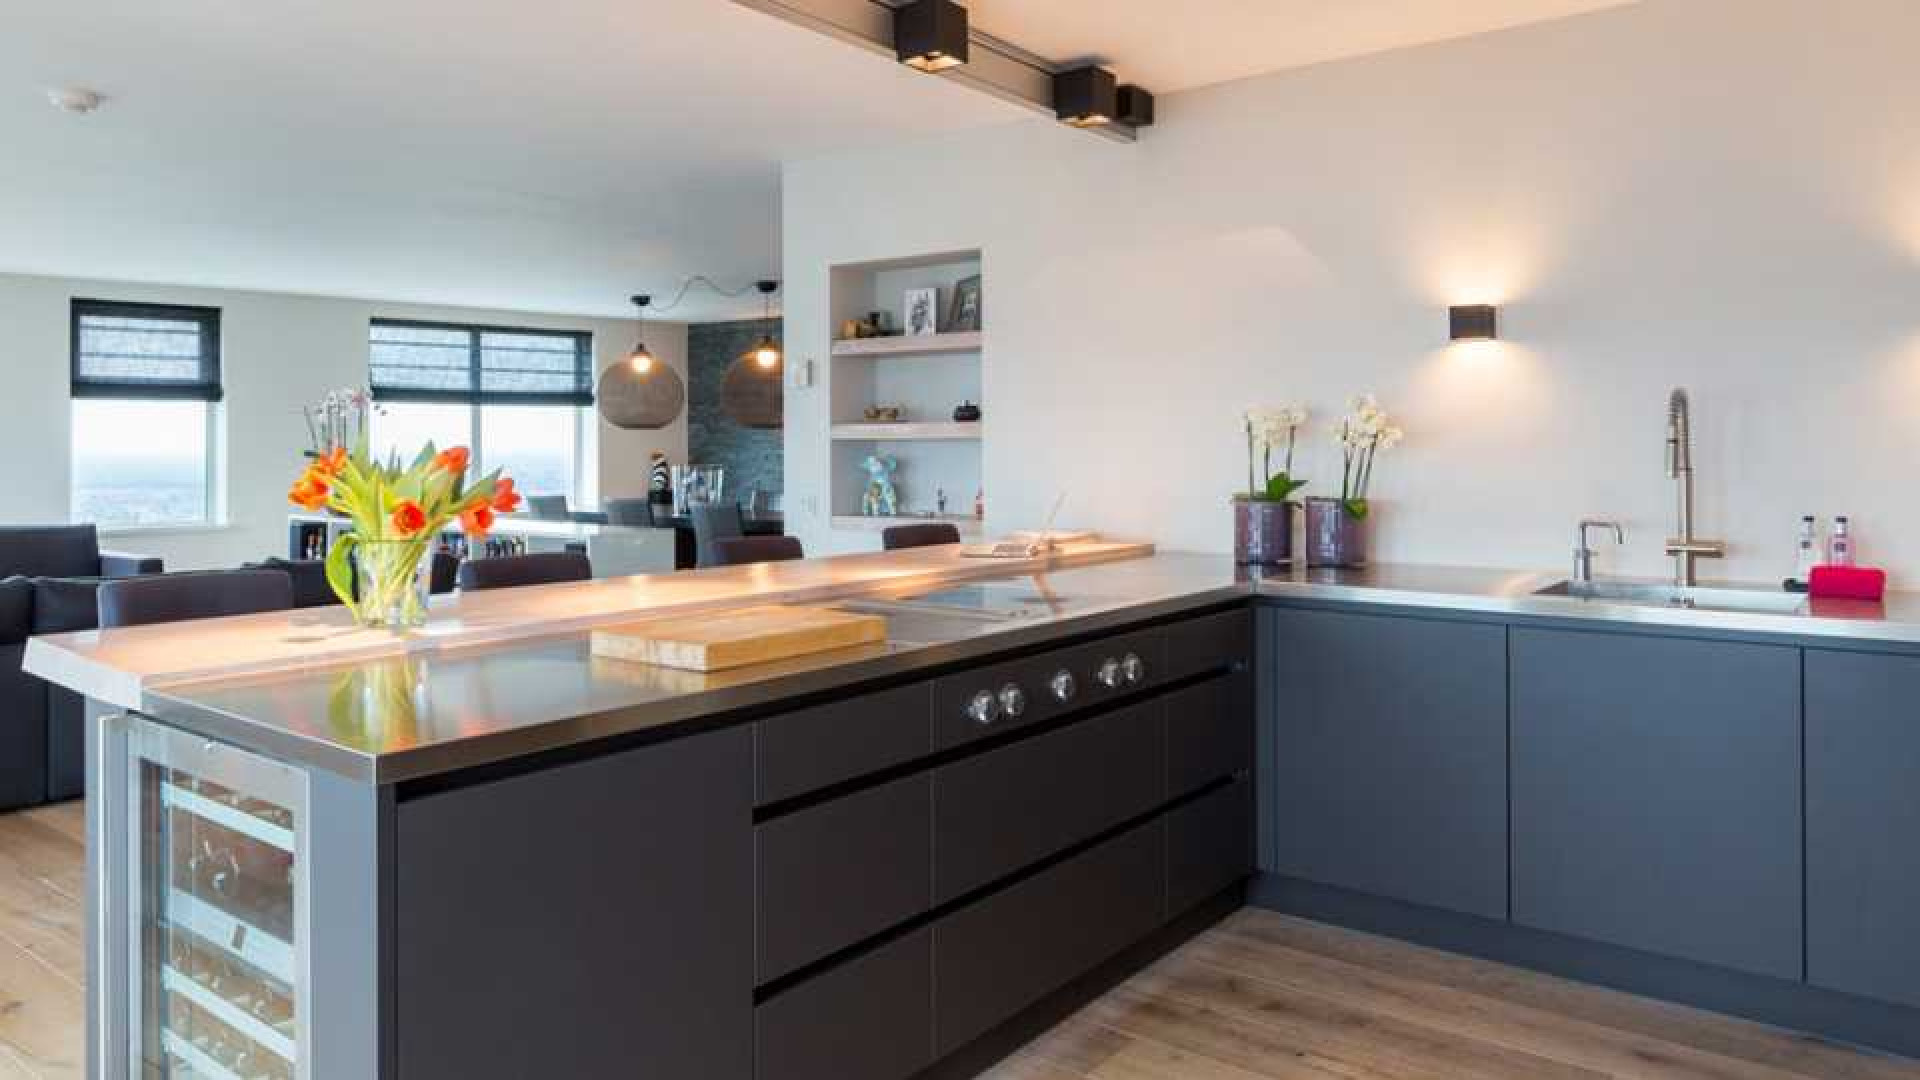 Amanda Krabbe en haar man Harrie Kolen zetten hun luxe penthouse in stille verkoop. Zie foto's 14